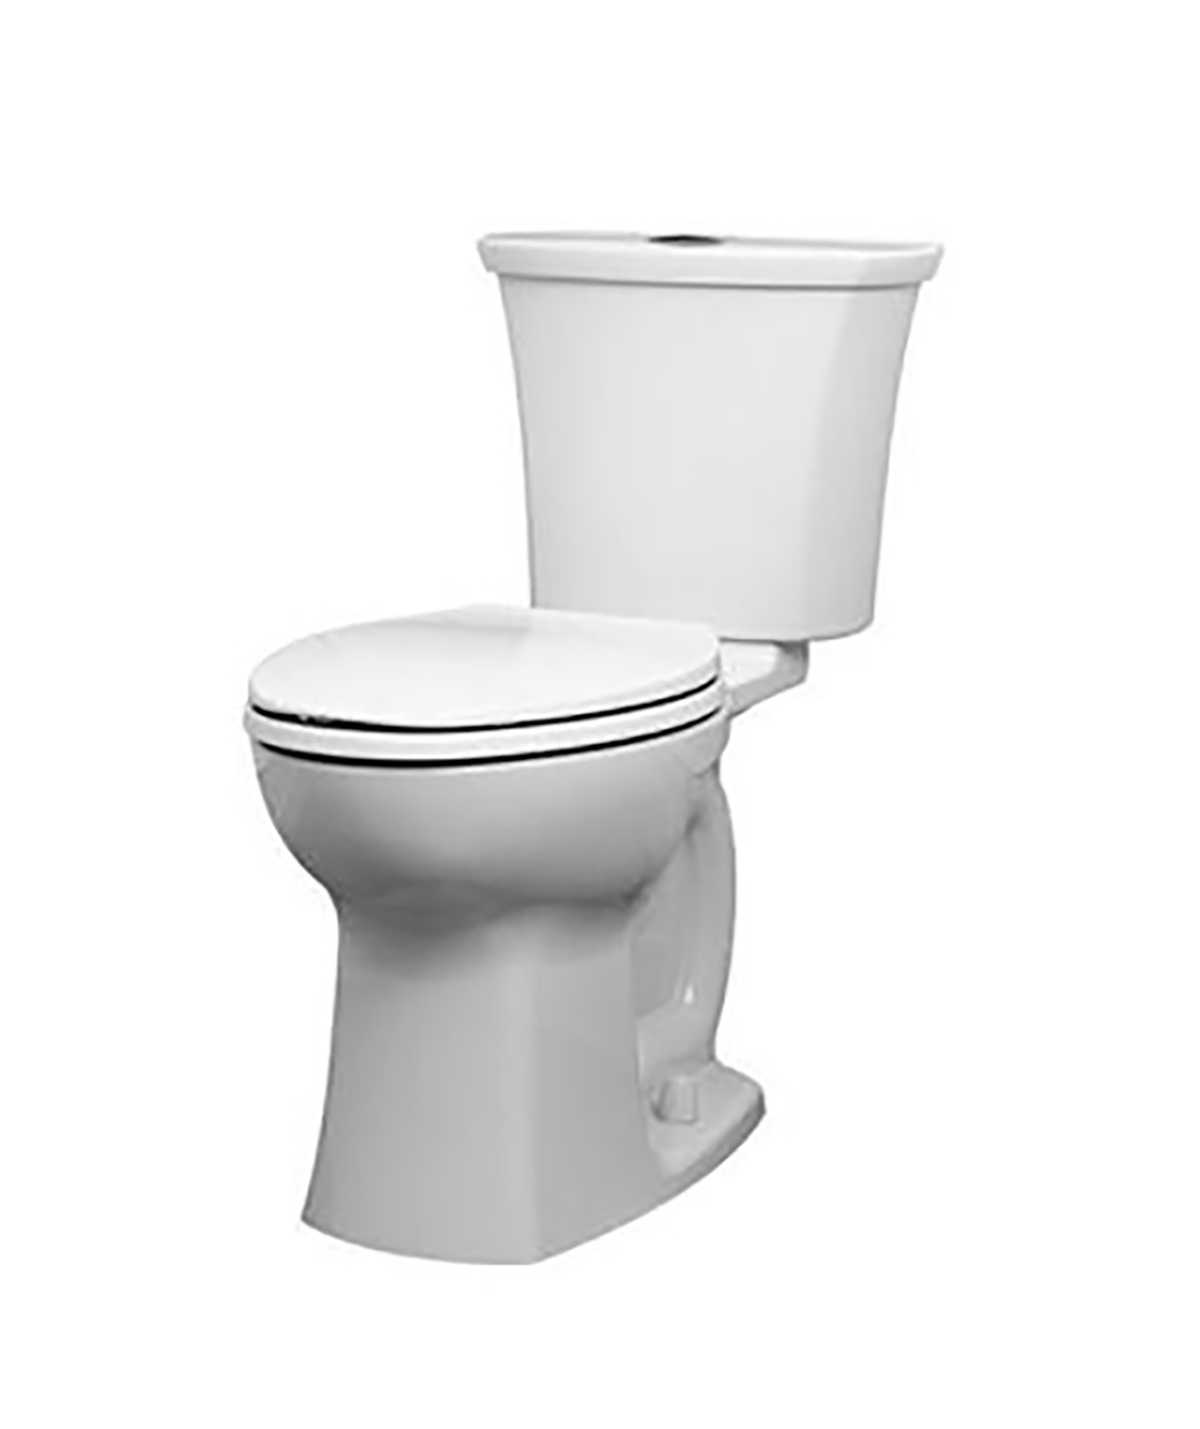 Toilette Edgemere complète allongée à hauteur de siège avec siège, deux pièces, à double chasse, 1,6 gpc/6,0 Lpc et 1,1 gpc/4,1 Lpc